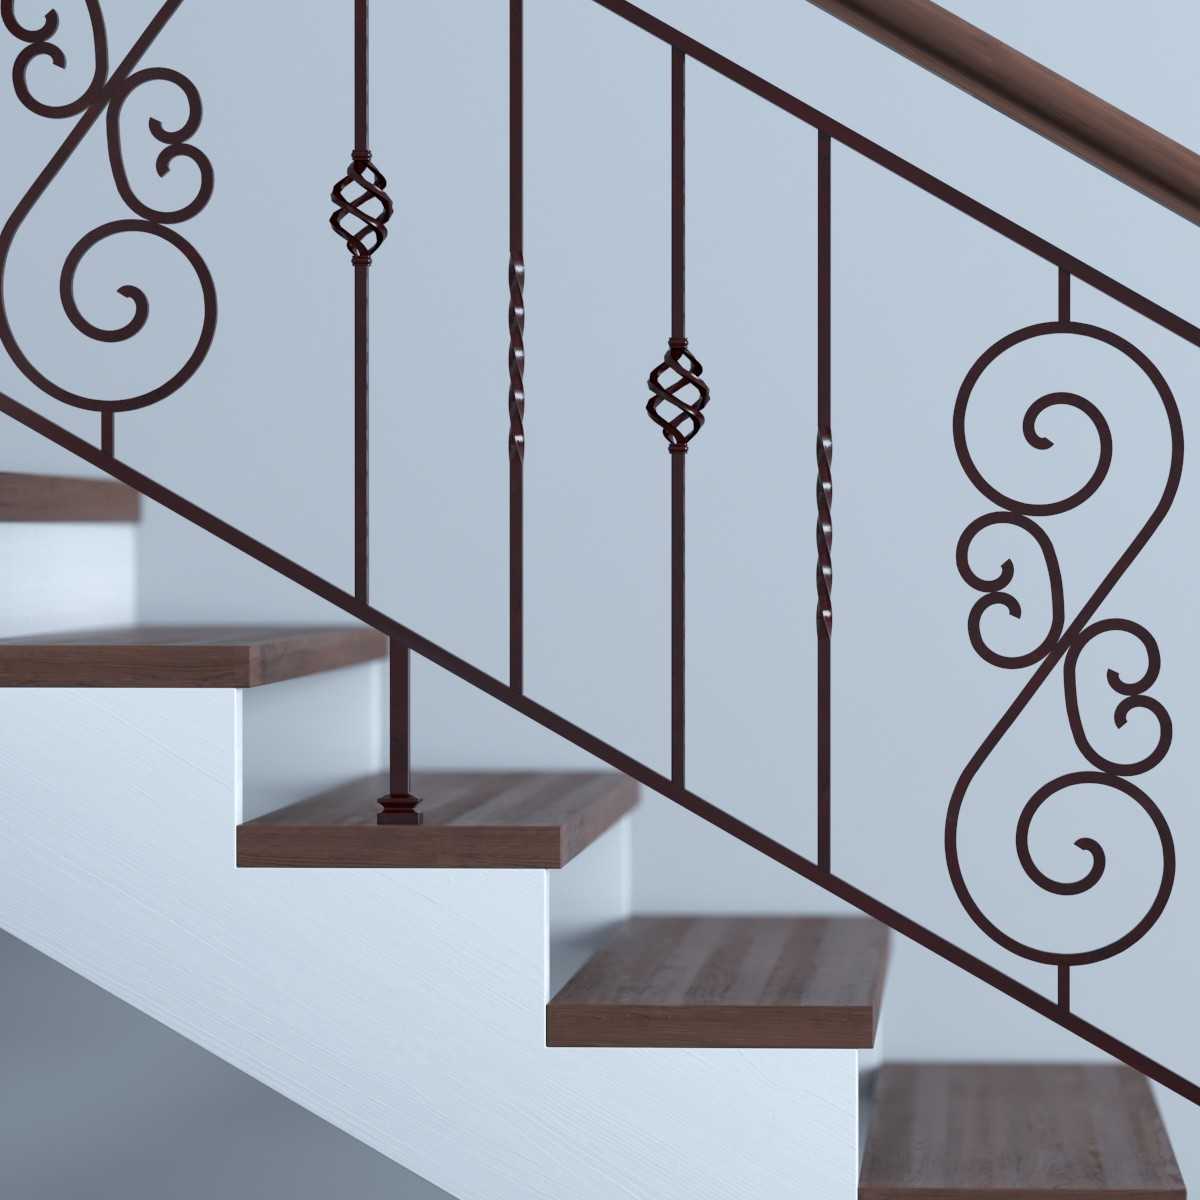 Перила для лестниц в частном доме – какие выбрать, из какого материала, как установить